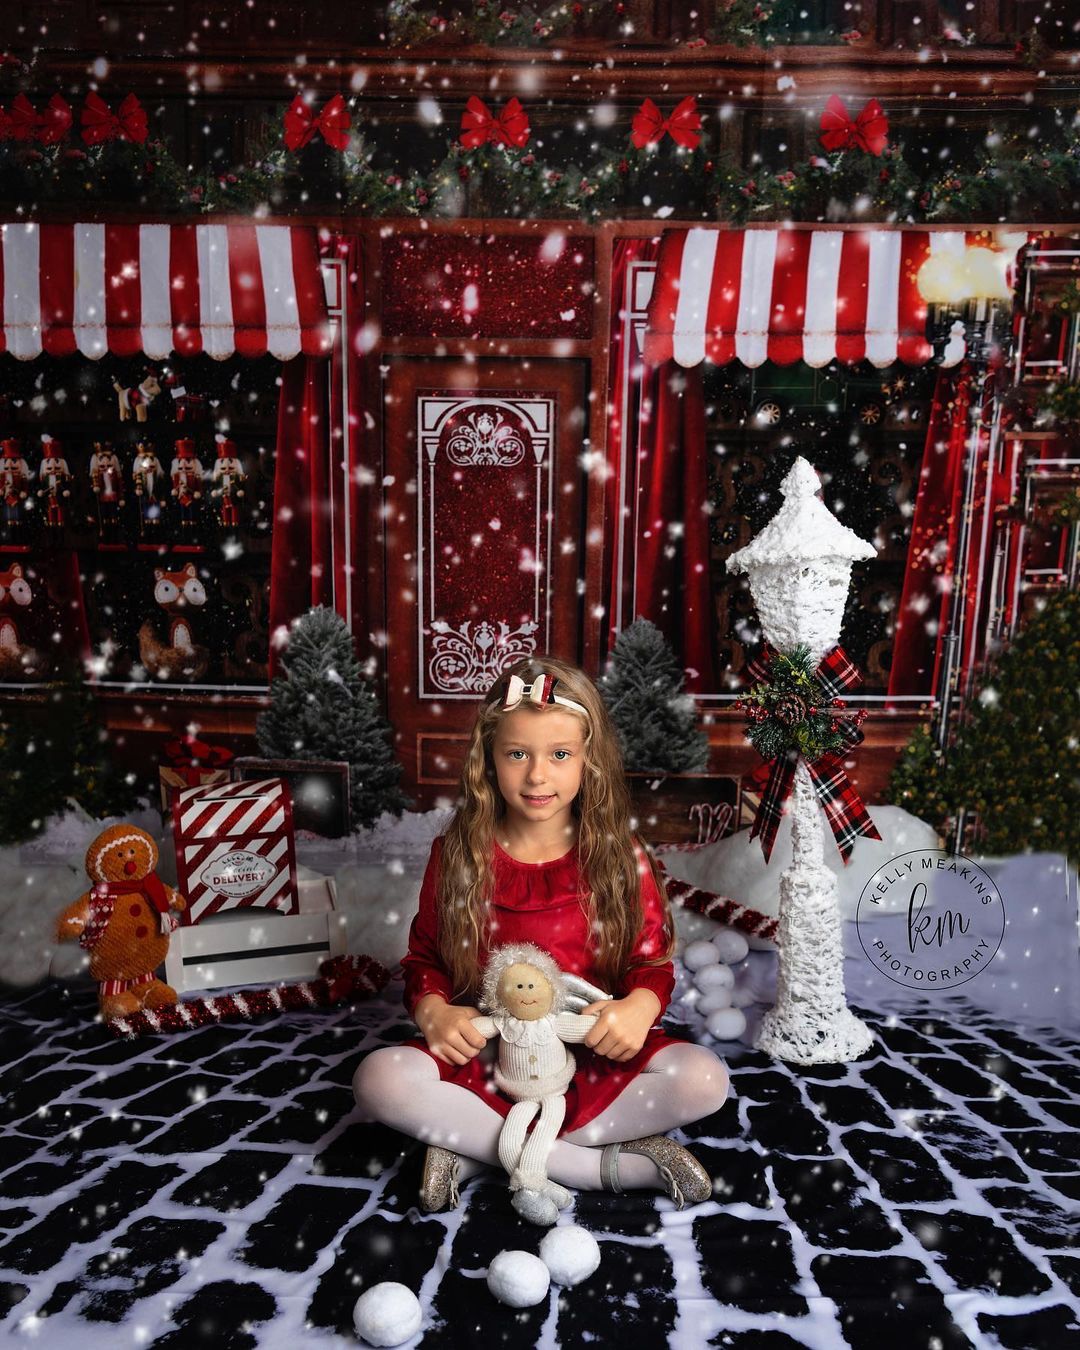 Sfondo natalizio per le vacanze invernali in stile vintage, negozio di giocattoli e dolciumi di Natale disegnato da Mini MakeBelieve